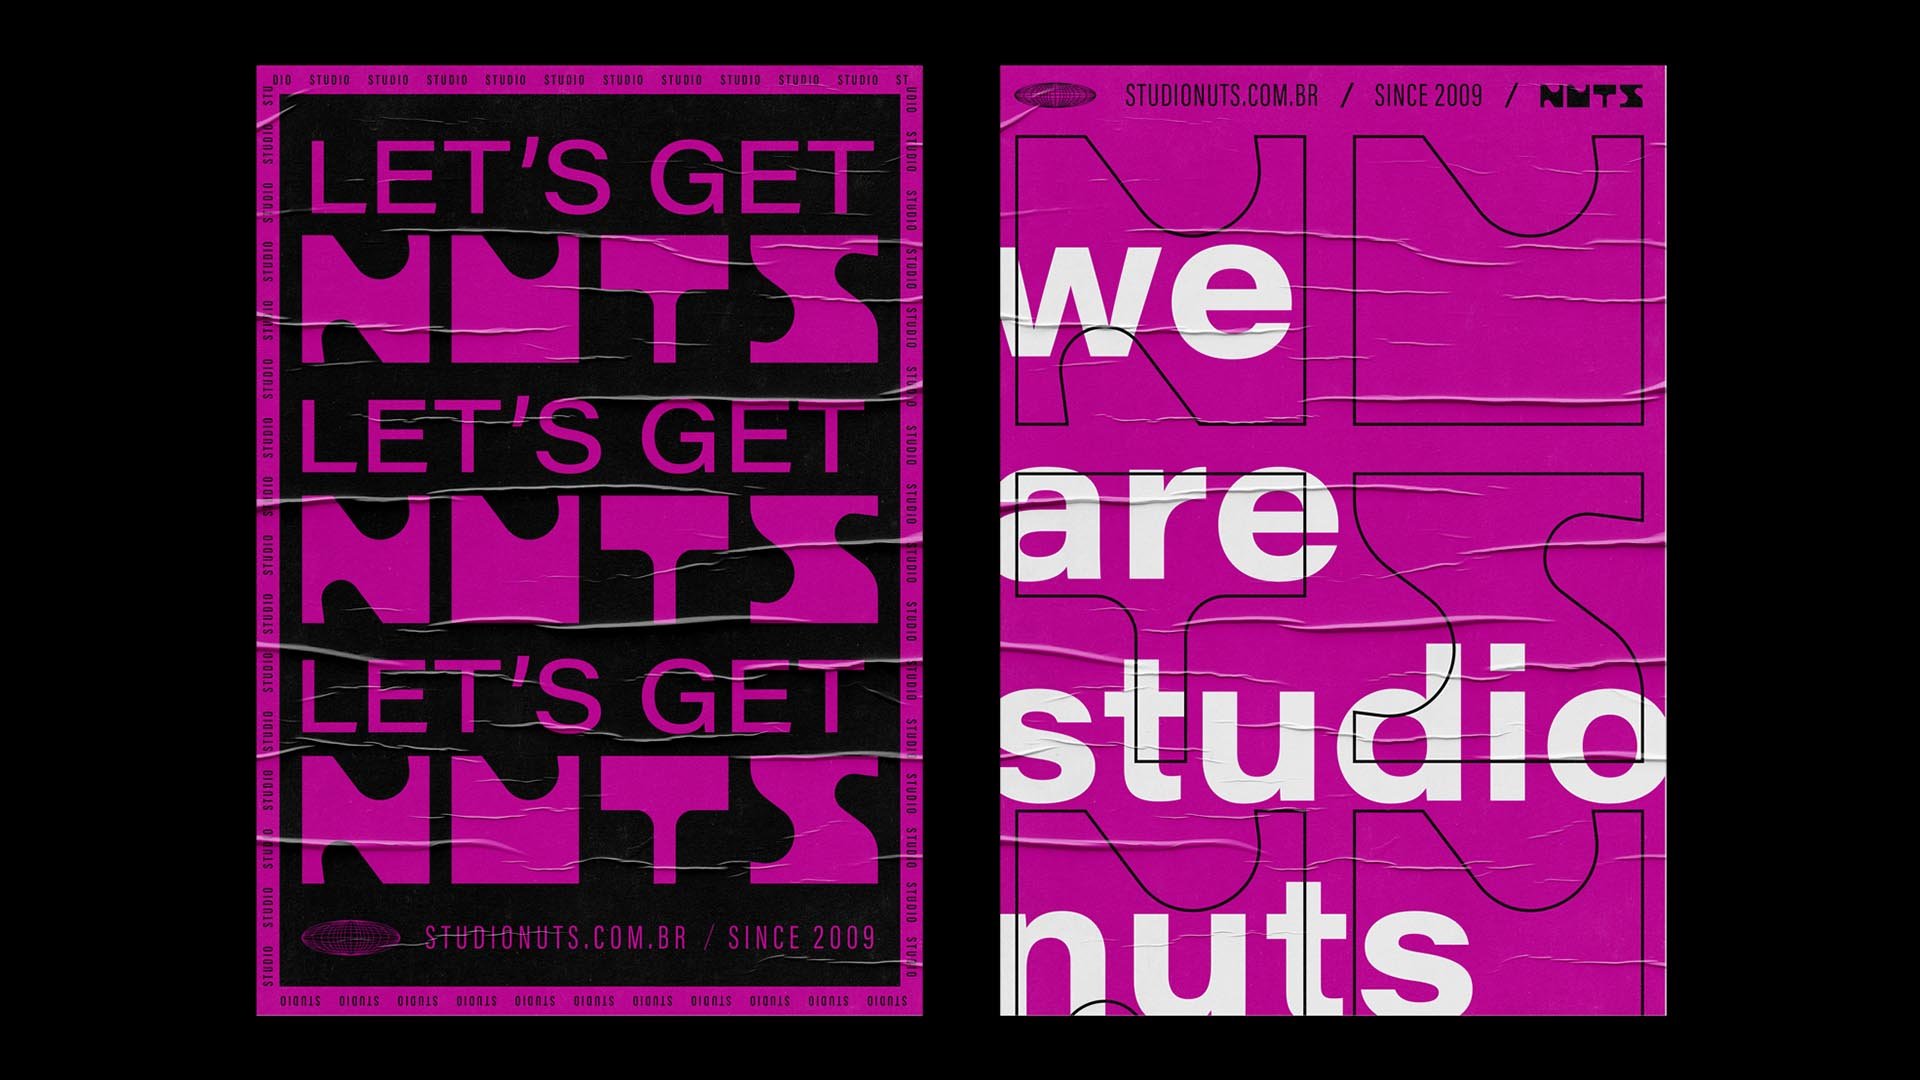 estudio-mola-studio-nuts-006-posters.jpg